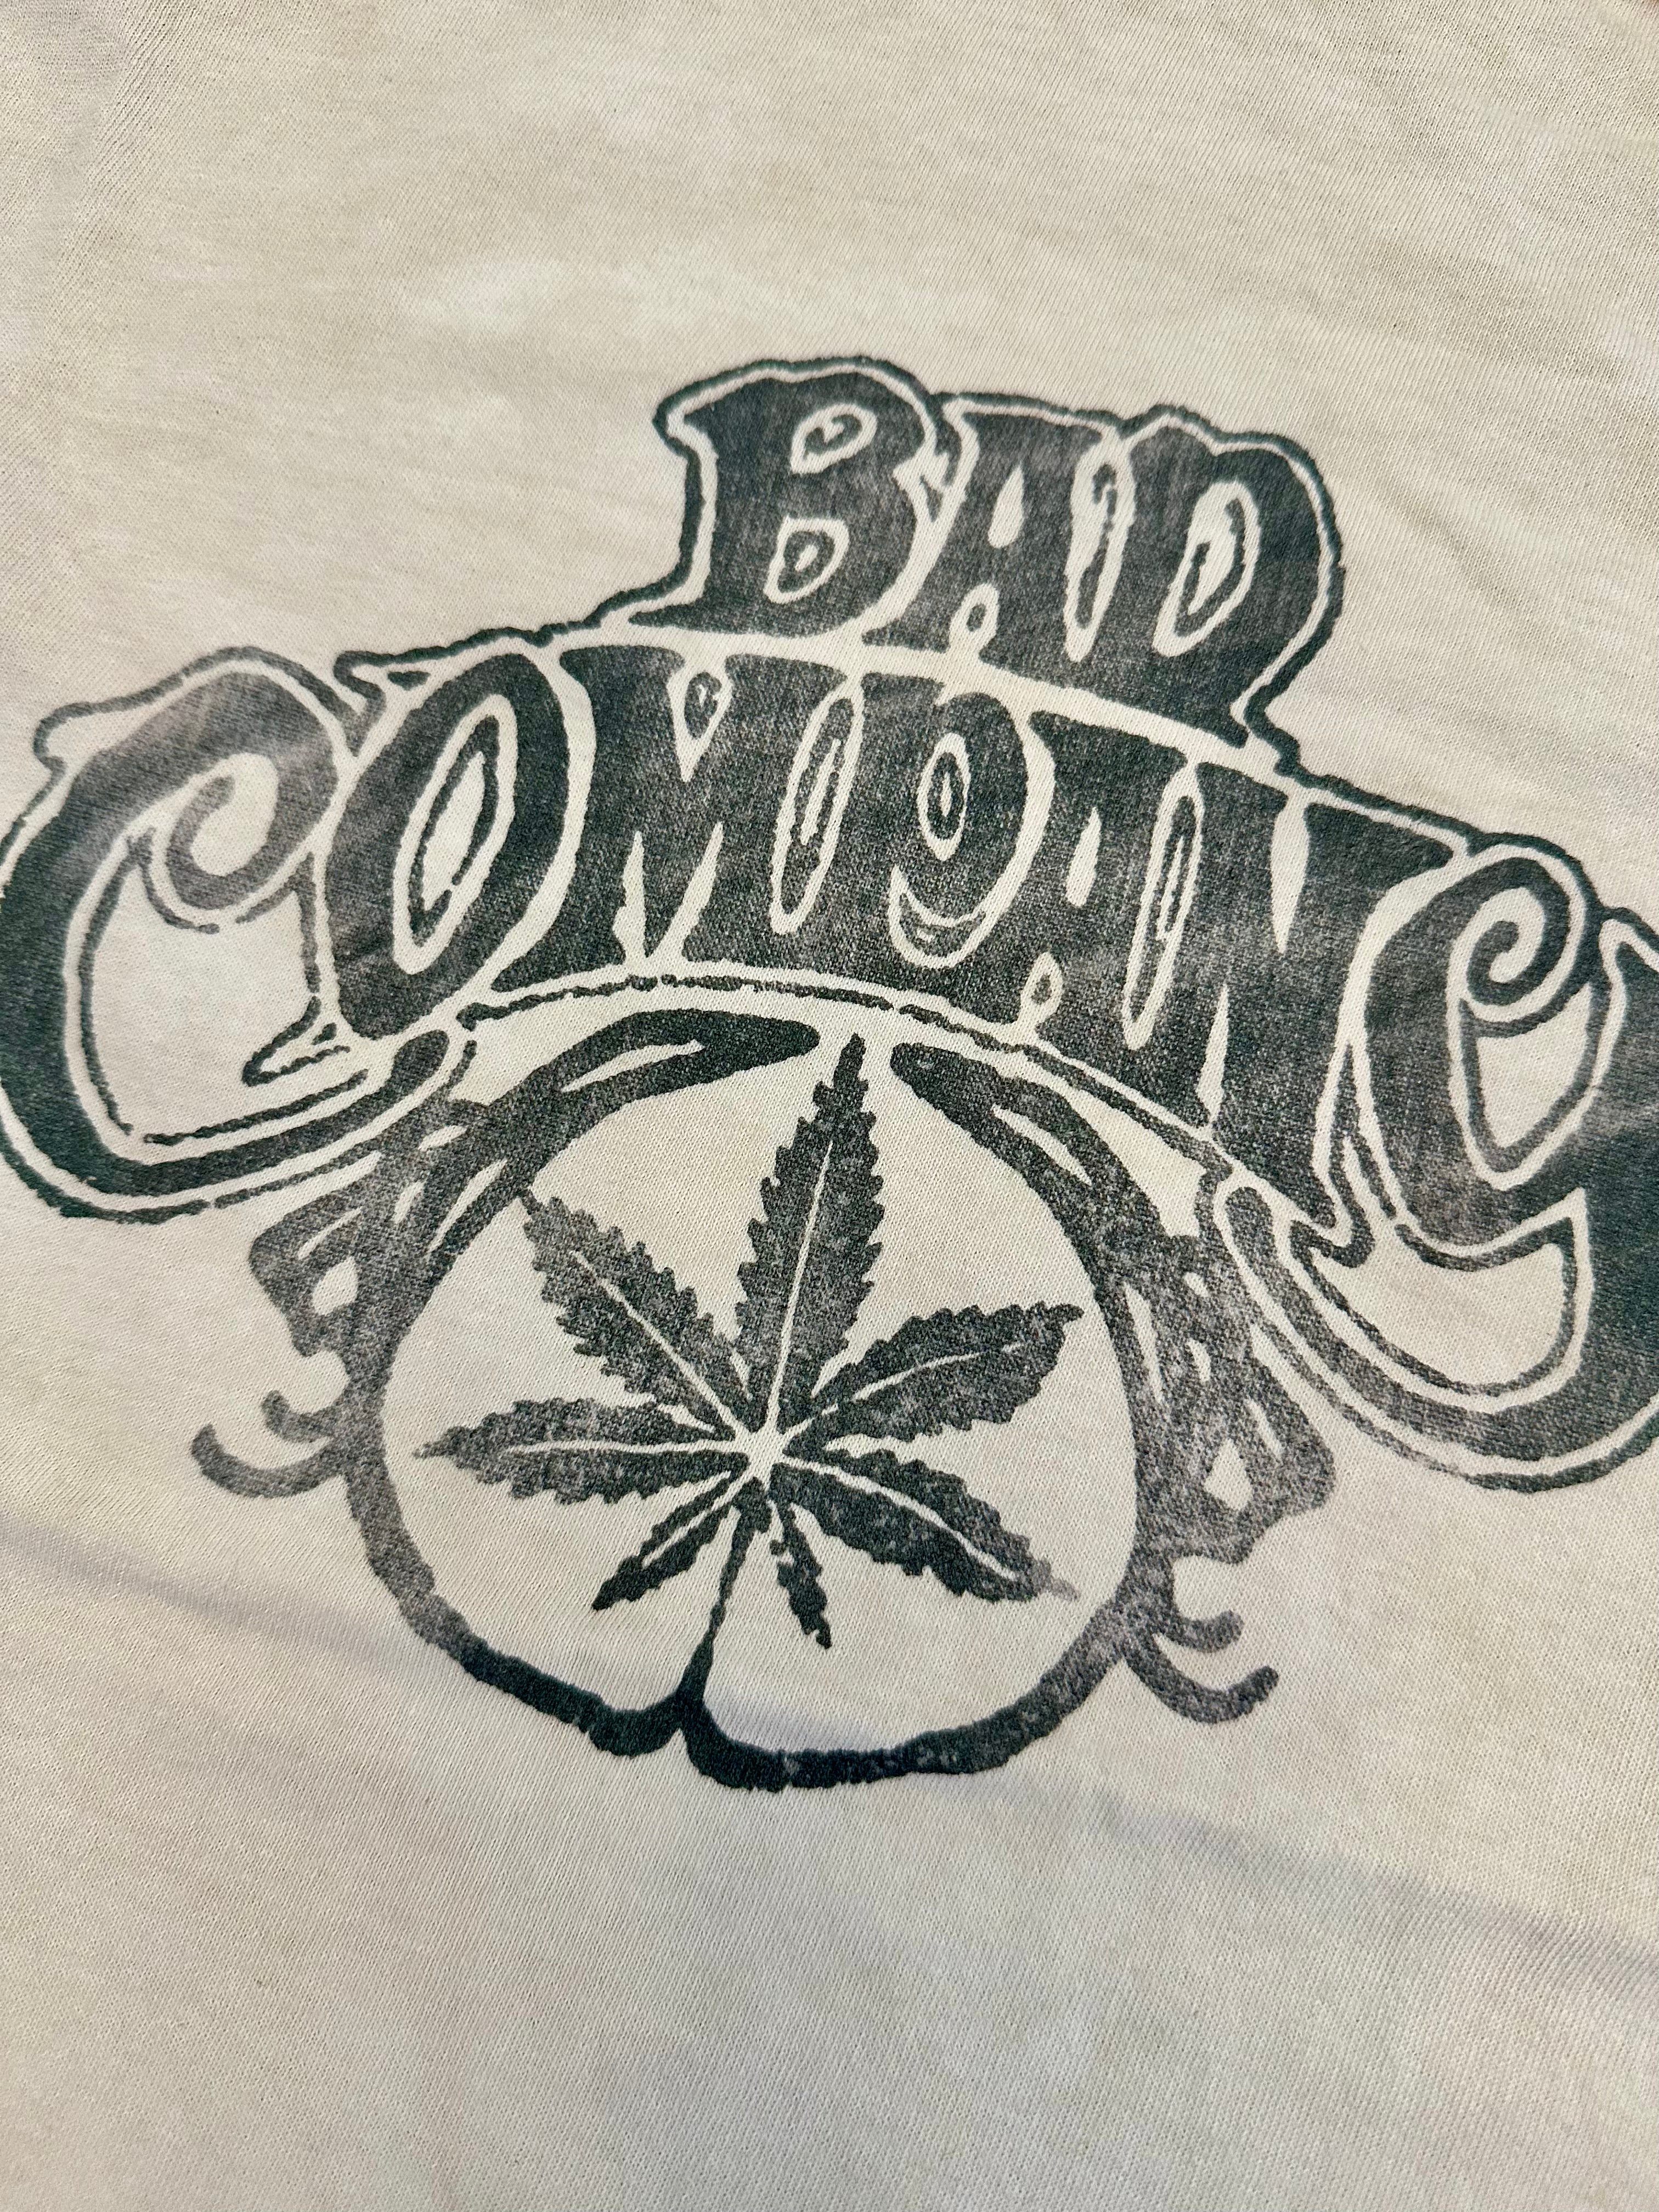 T-shirt "Bad Company" Mr Hot Dog